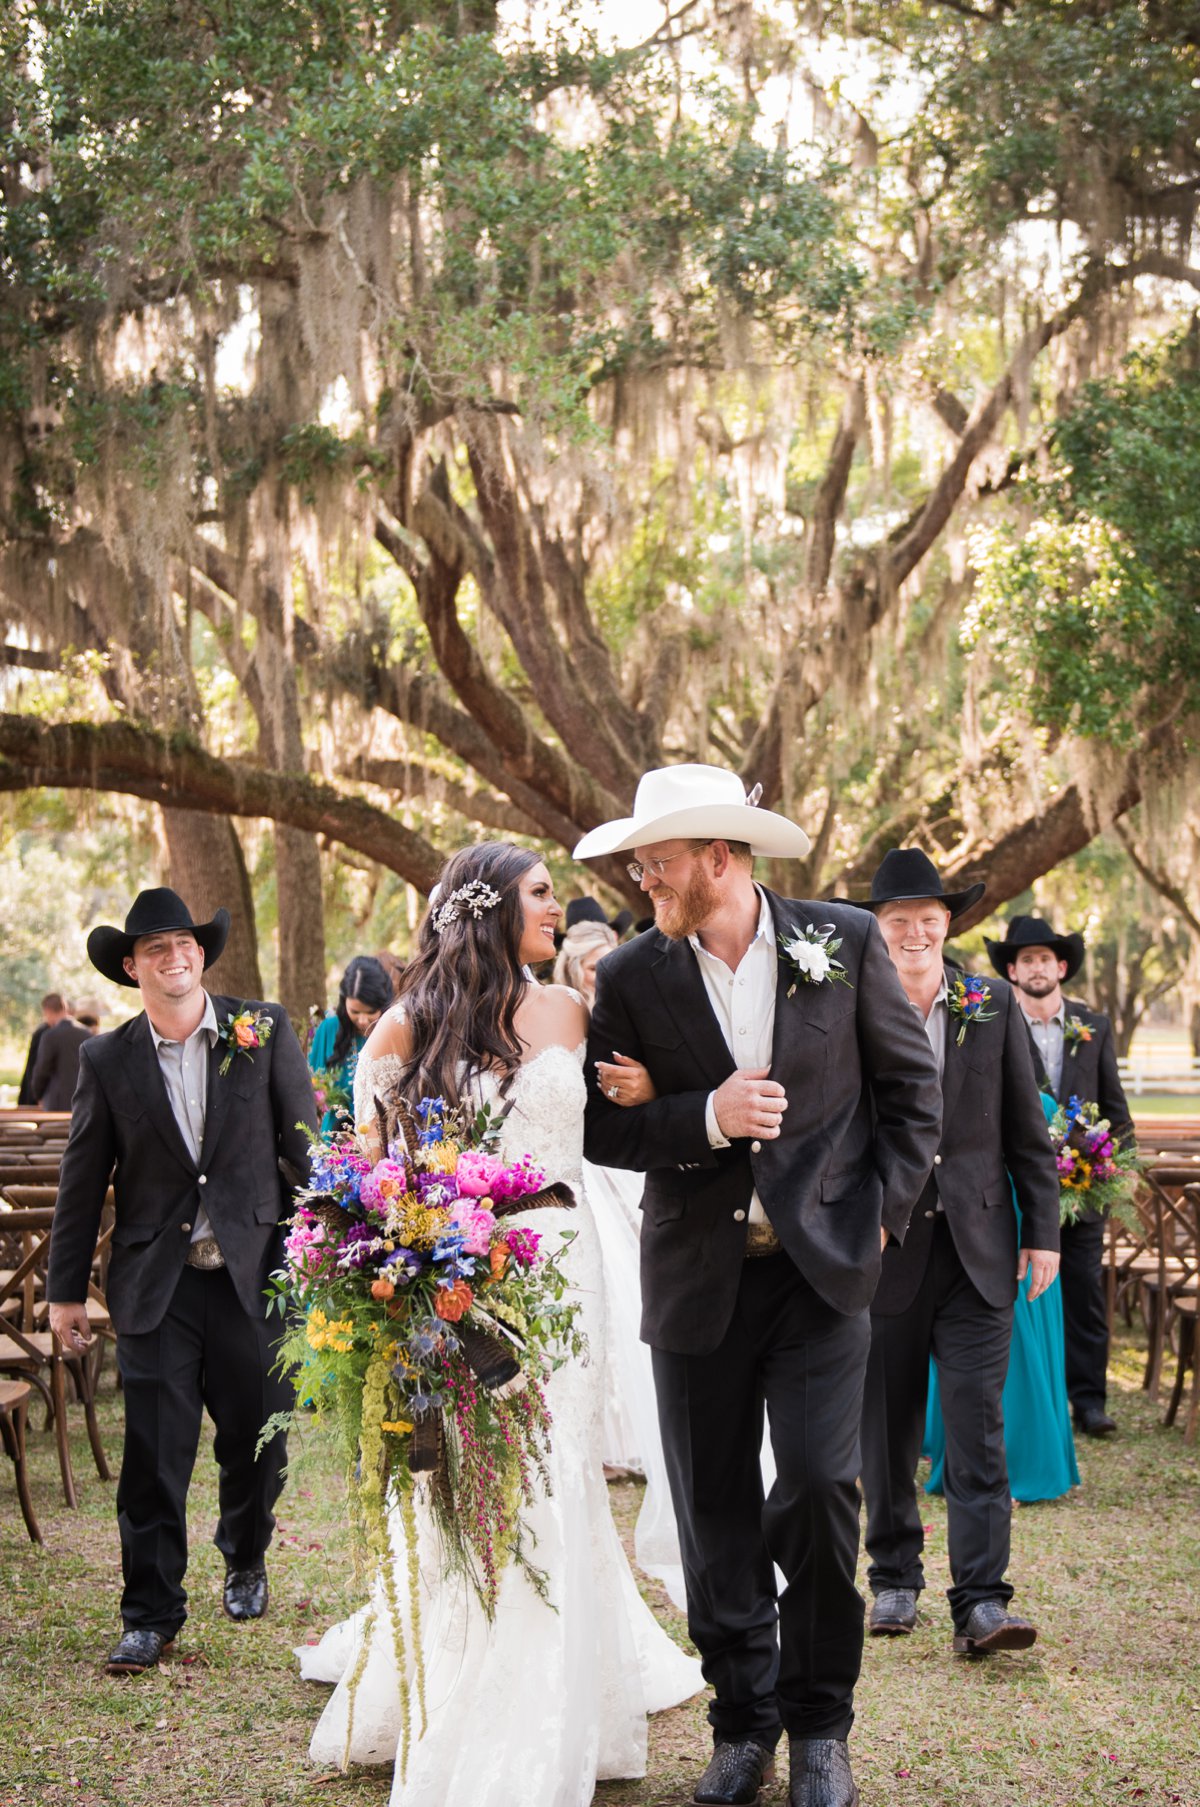 A Country Chic Boho Wedding via TheELD.com